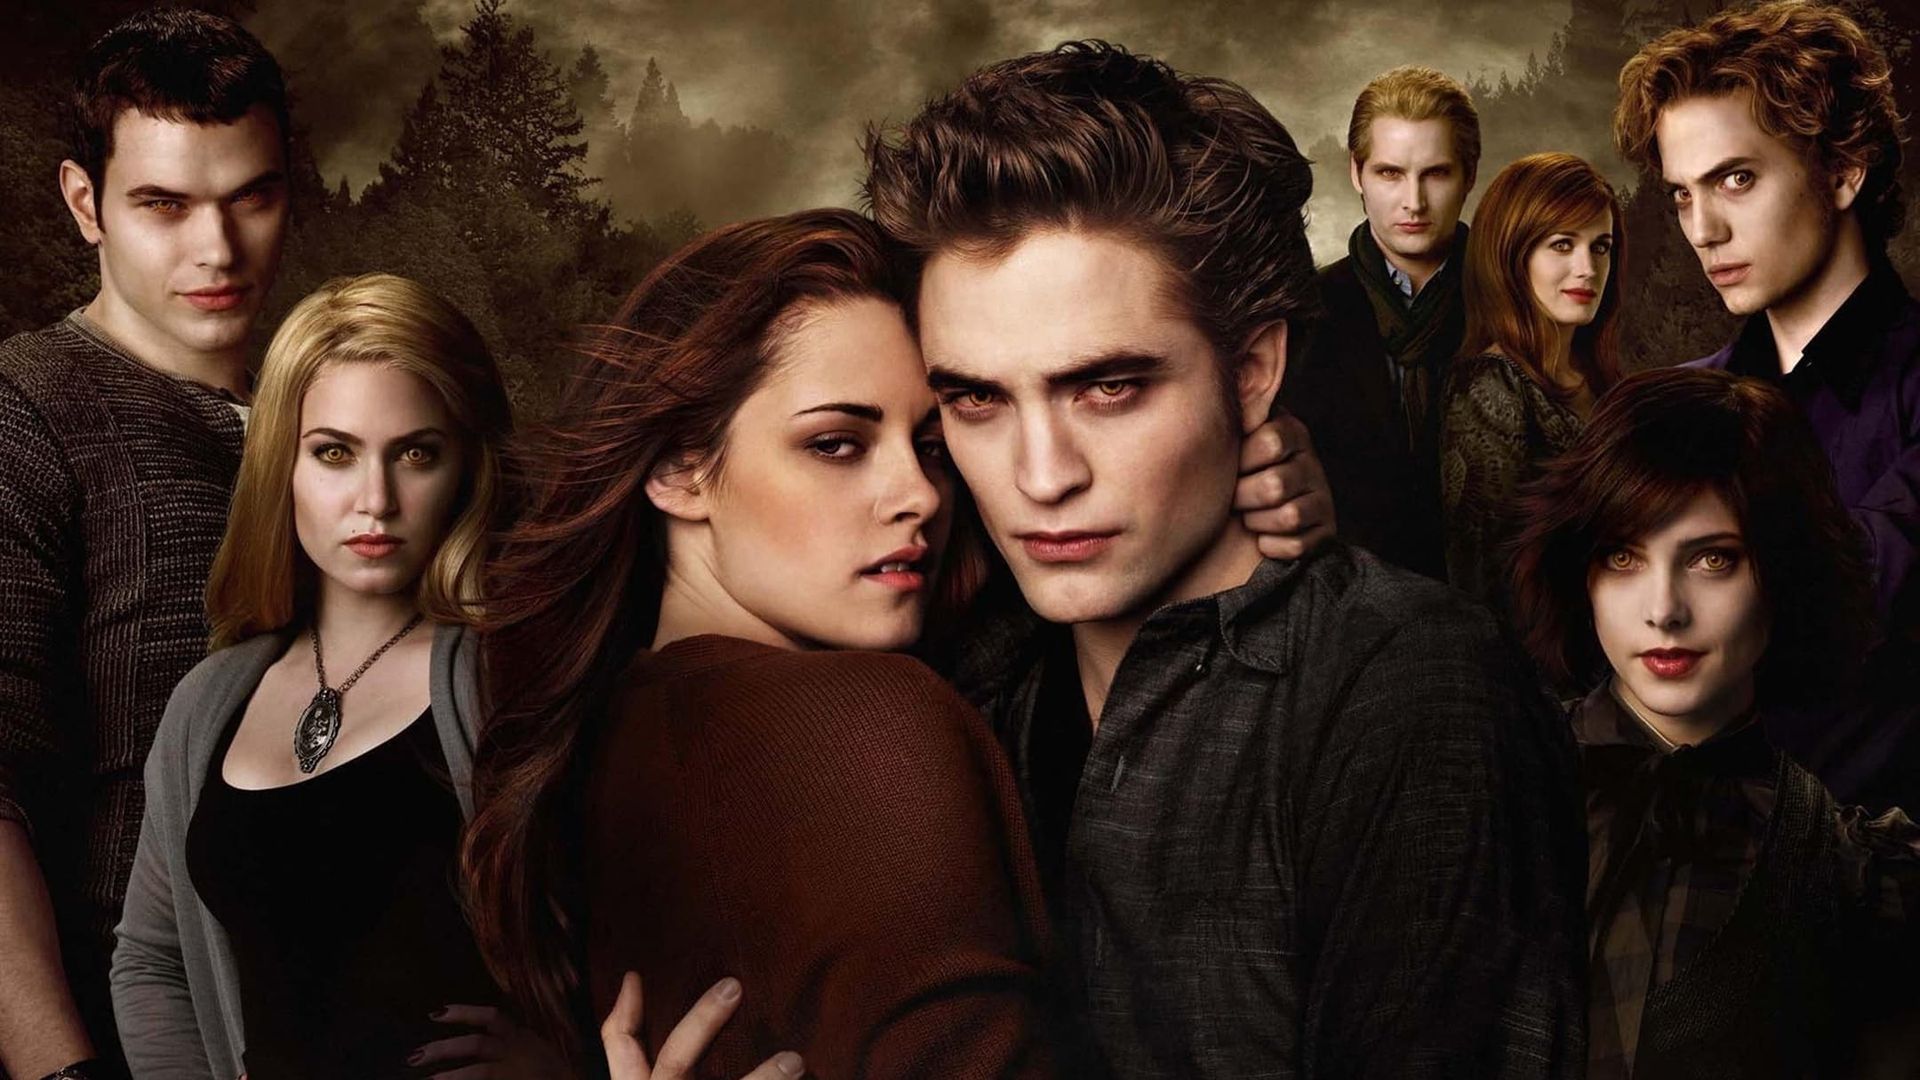 The Twilight Saga: New Moon Backdrop